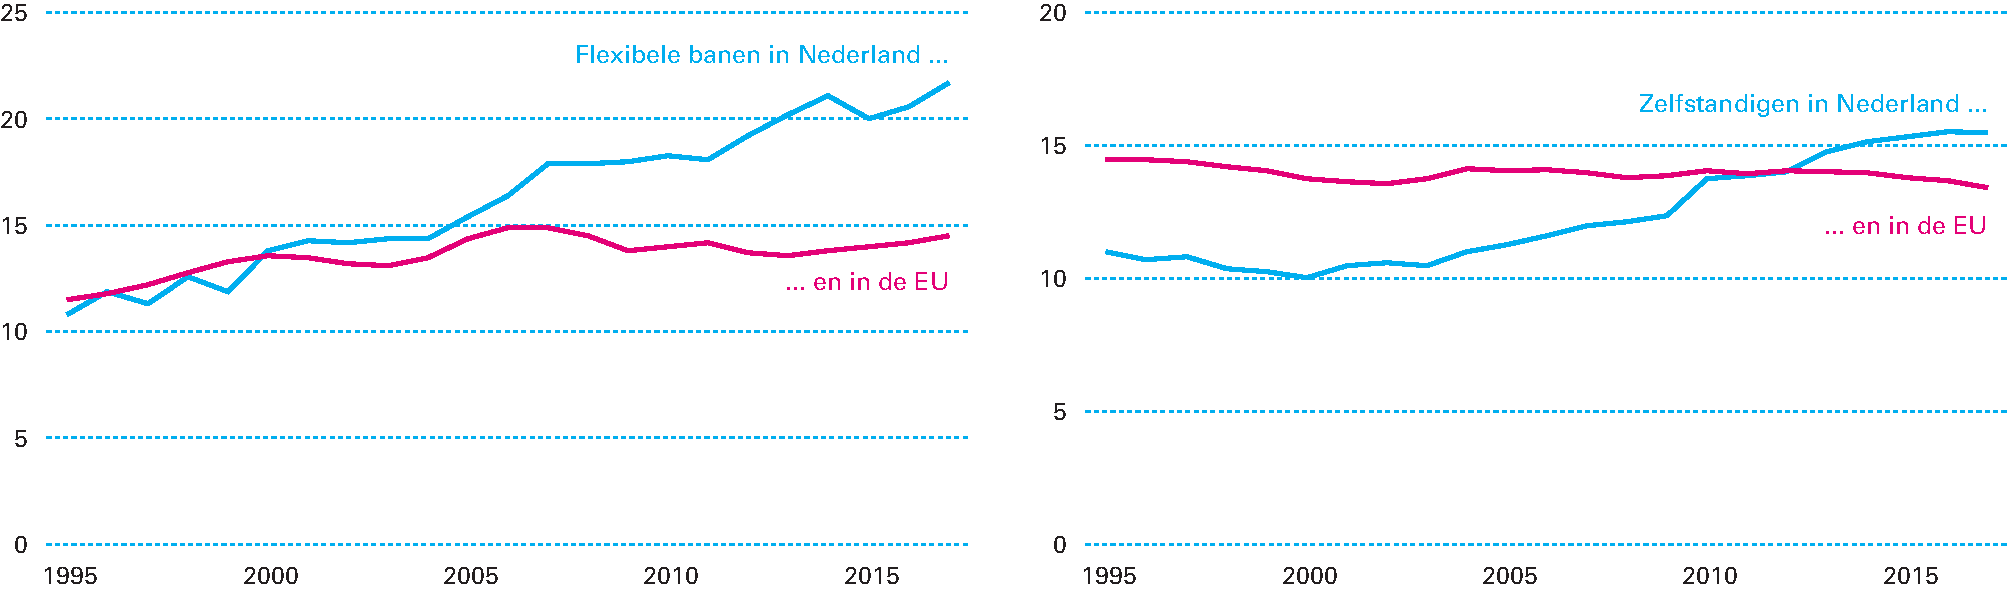 Figuur 3.1.1 De sterke flexibilisering van de arbeidsmarkt is typisch Nederlands